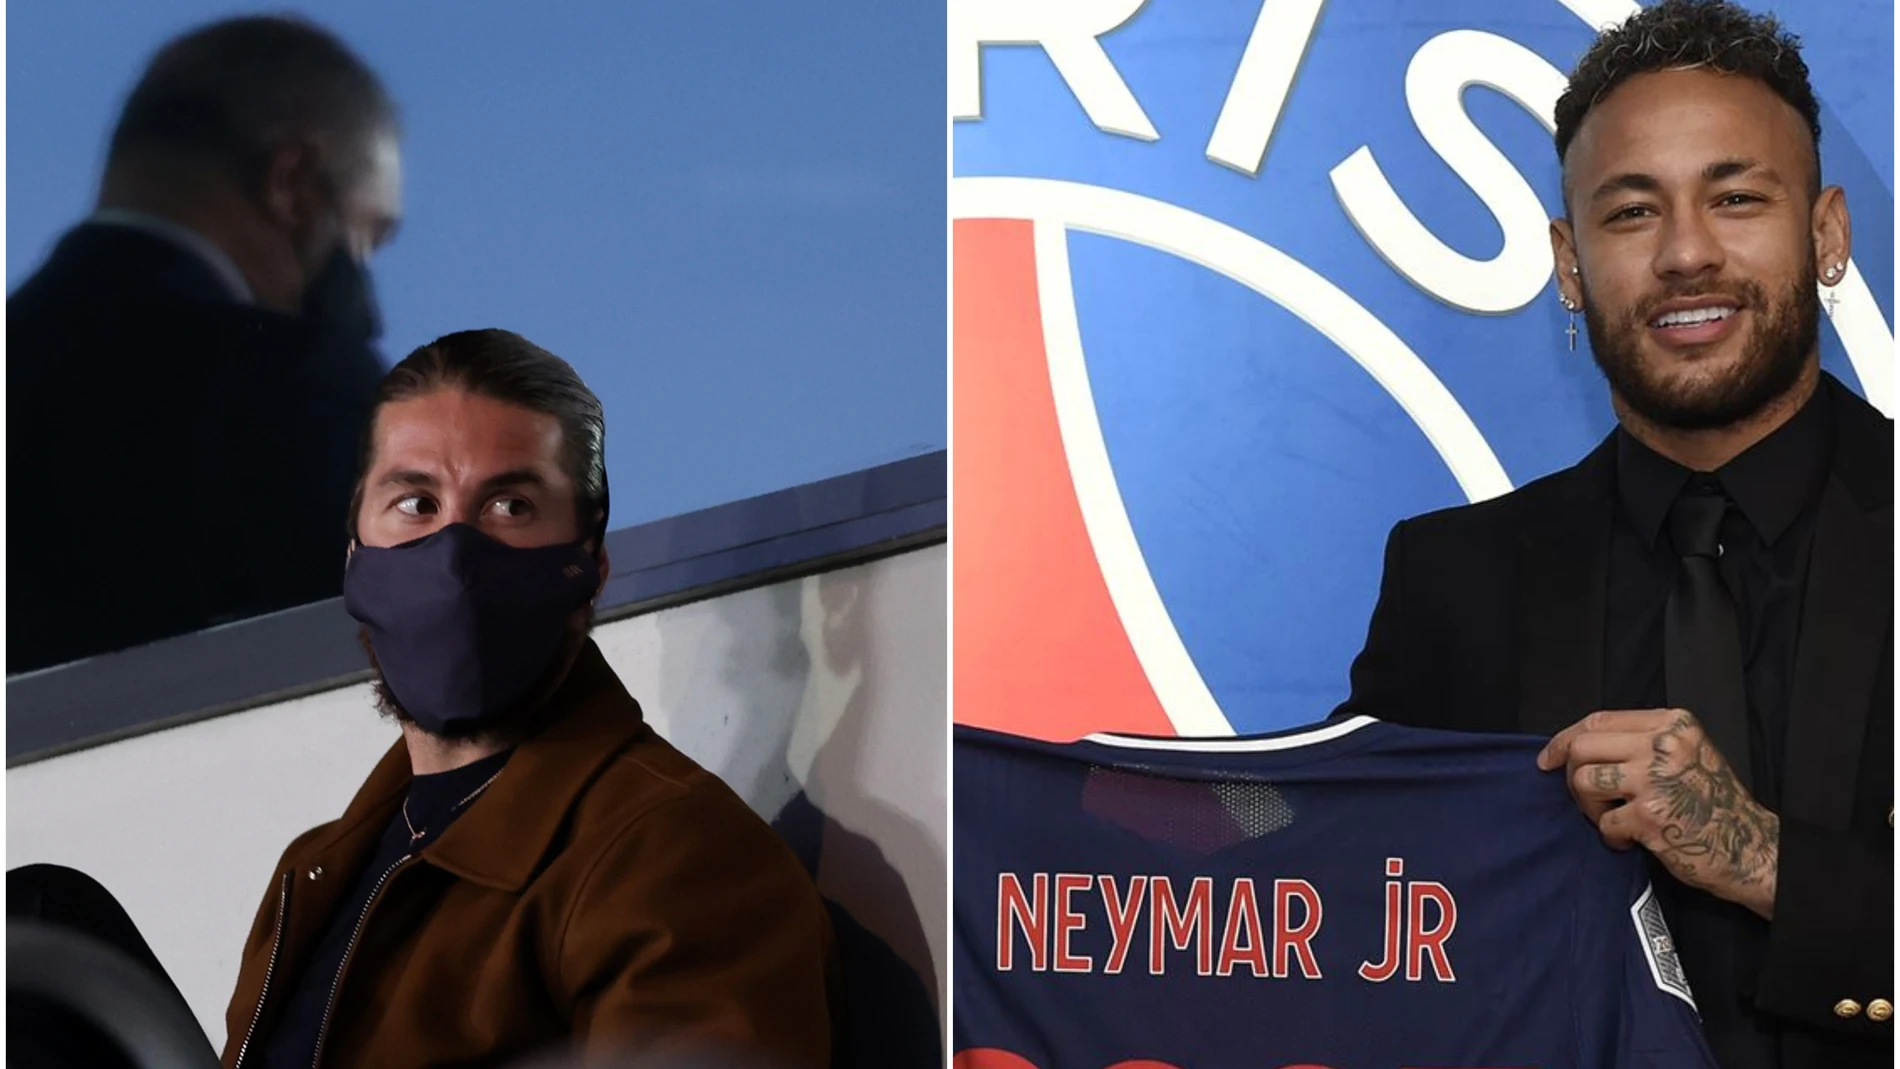 Sergio Ramos siembra la polémica tras aplaudir en Instagram la renovación de Neymar en el PSG